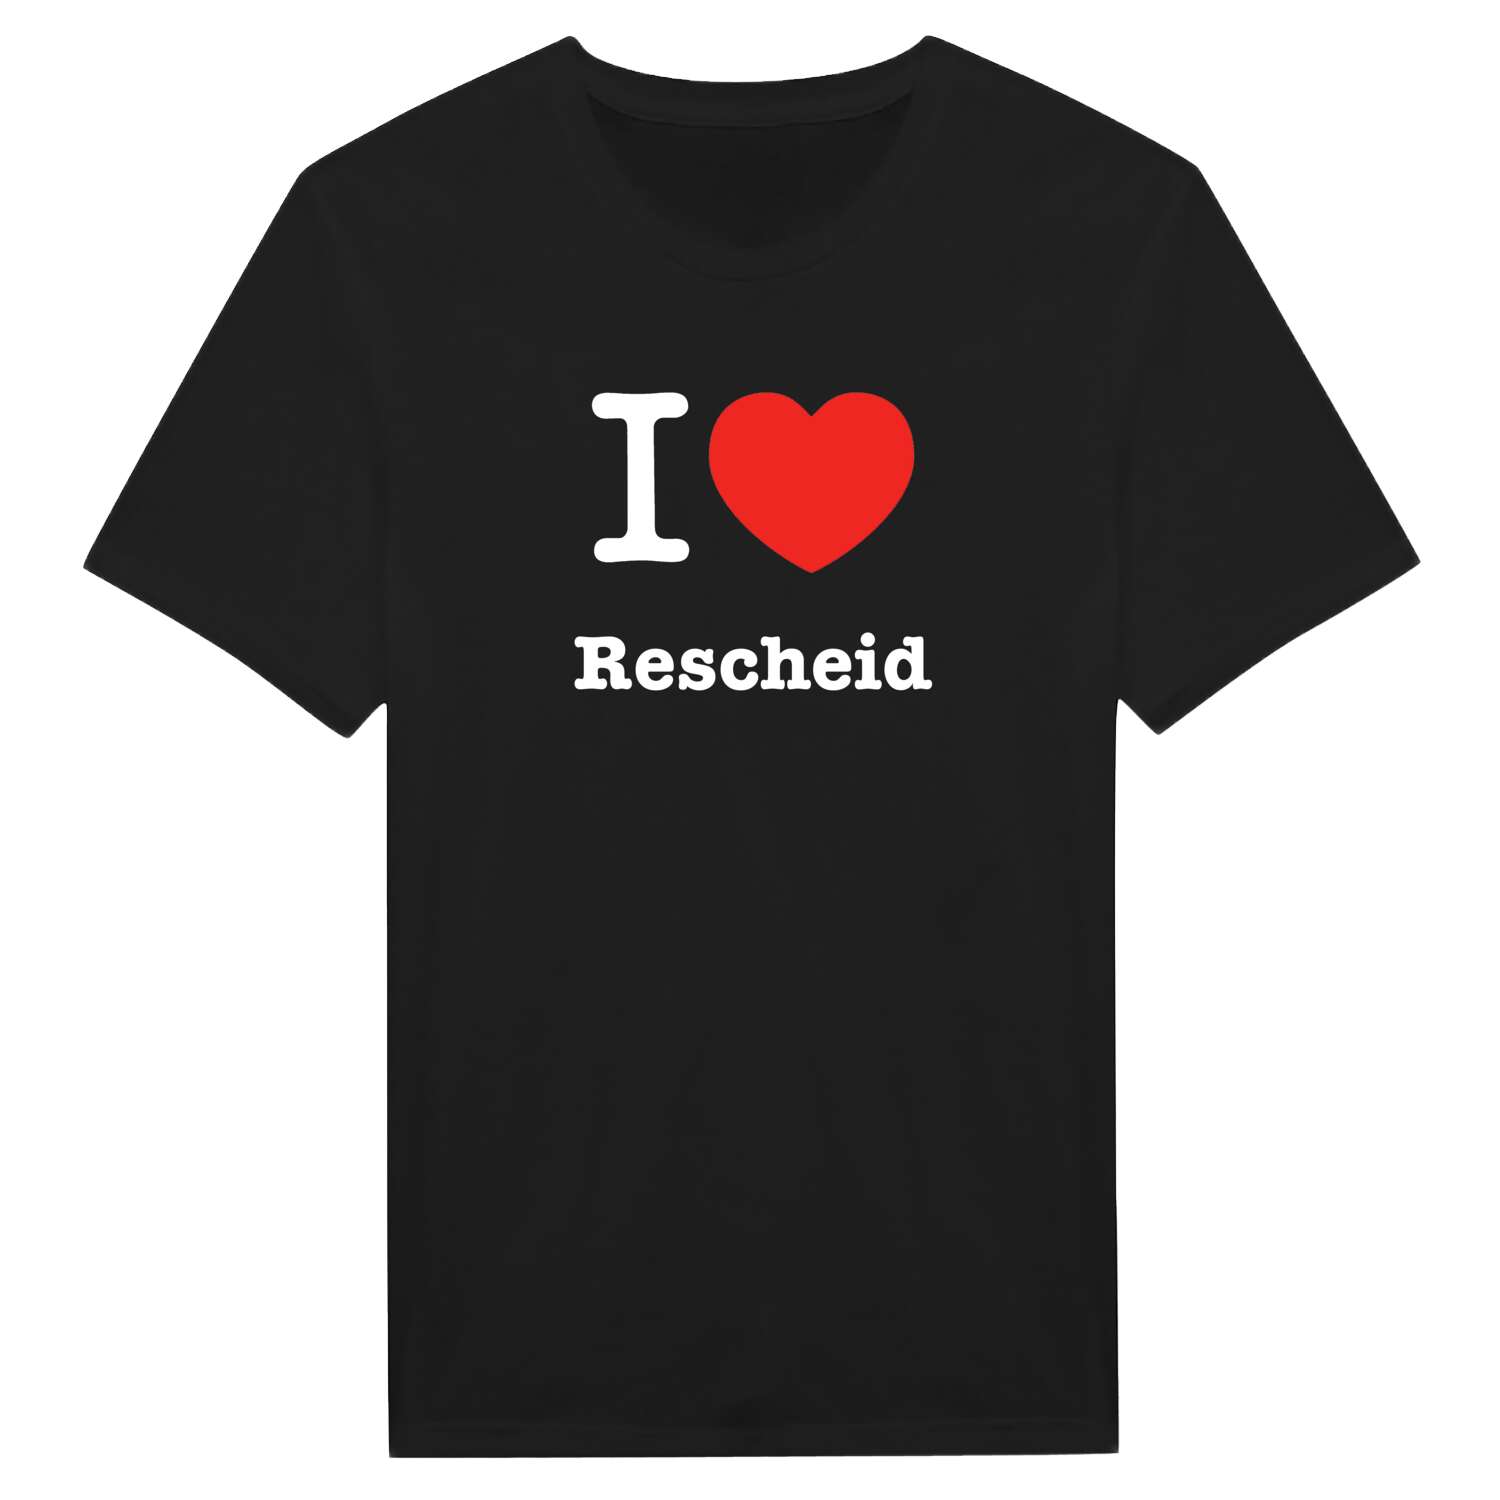 Rescheid T-Shirt »I love«